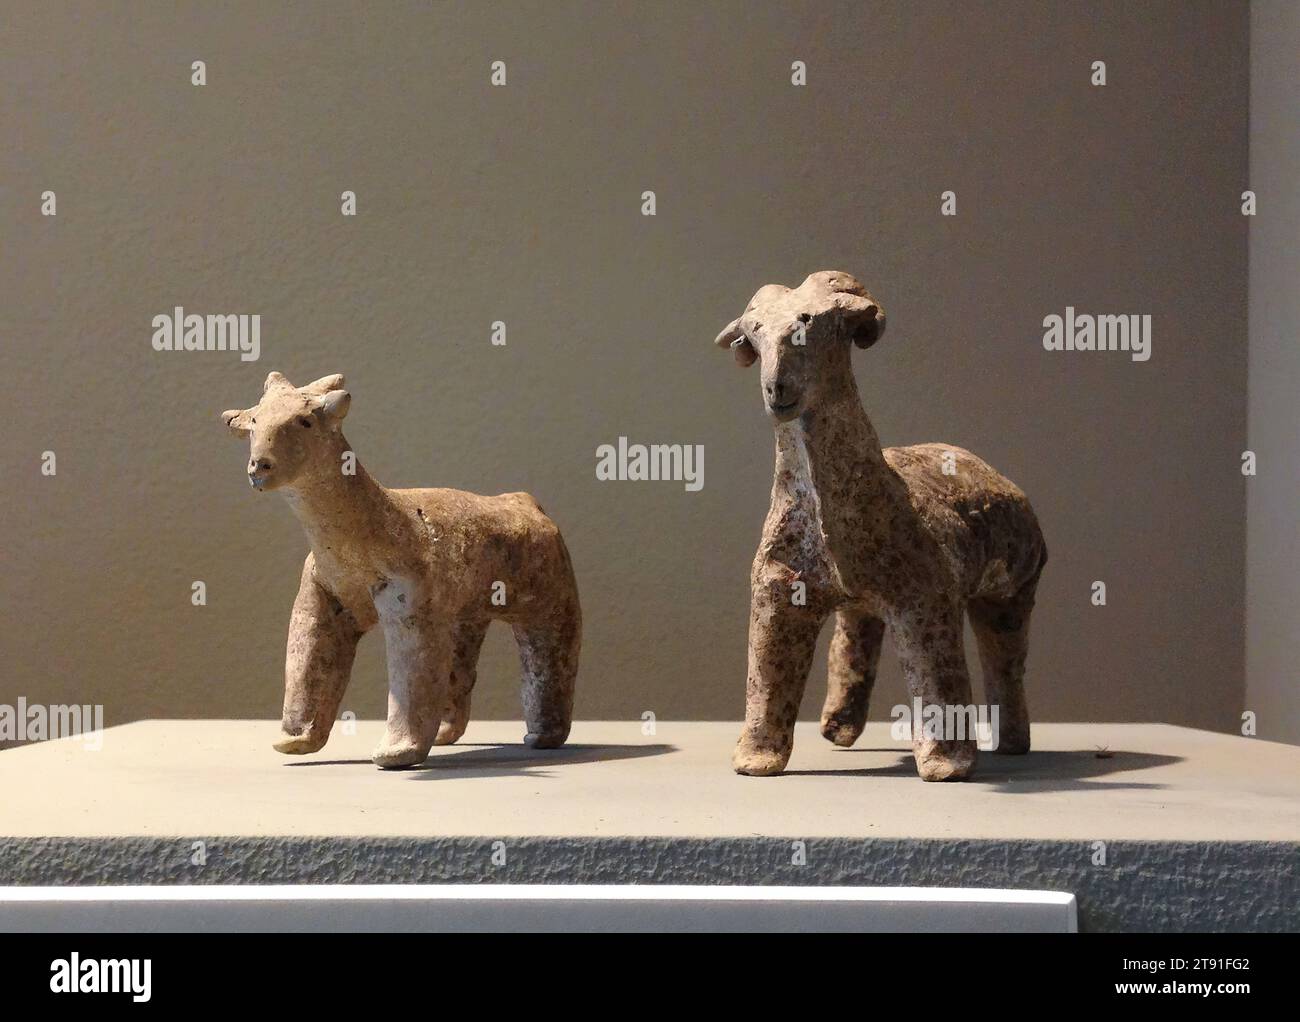 Schafe, 3000-2500 BCE, 3-1/8 x 4-5/8 x 1-3/4 Zoll (7,9 x 11,7 x 4,4 cm), Steingut, China, 31.-24. Jahrhundert v. Chr., mit wenig mehr als gerollten und eingeklemmten Tonstücken, ein neolithischer Handwerker, der vor über 4.000 Jahren arbeitete, nahm geschickt das Wesen eines Mutterschafs und Widders ein. Kleine Tonbilder anderer domestizierter Tiere wie Schweine, Hunde, Hühner und Schafe wurden von zahlreichen neolithischen Fundstätten in der Provinz Hubei ausgegraben. Obwohl man vermutet, dass solche Zahlen mit den Nachbarvölkern in den Provinzen Hunan und Henan gehandelt wurden, sind wir uns nicht sicher, welchen Zweck sie möglicherweise gedient haben Stockfoto